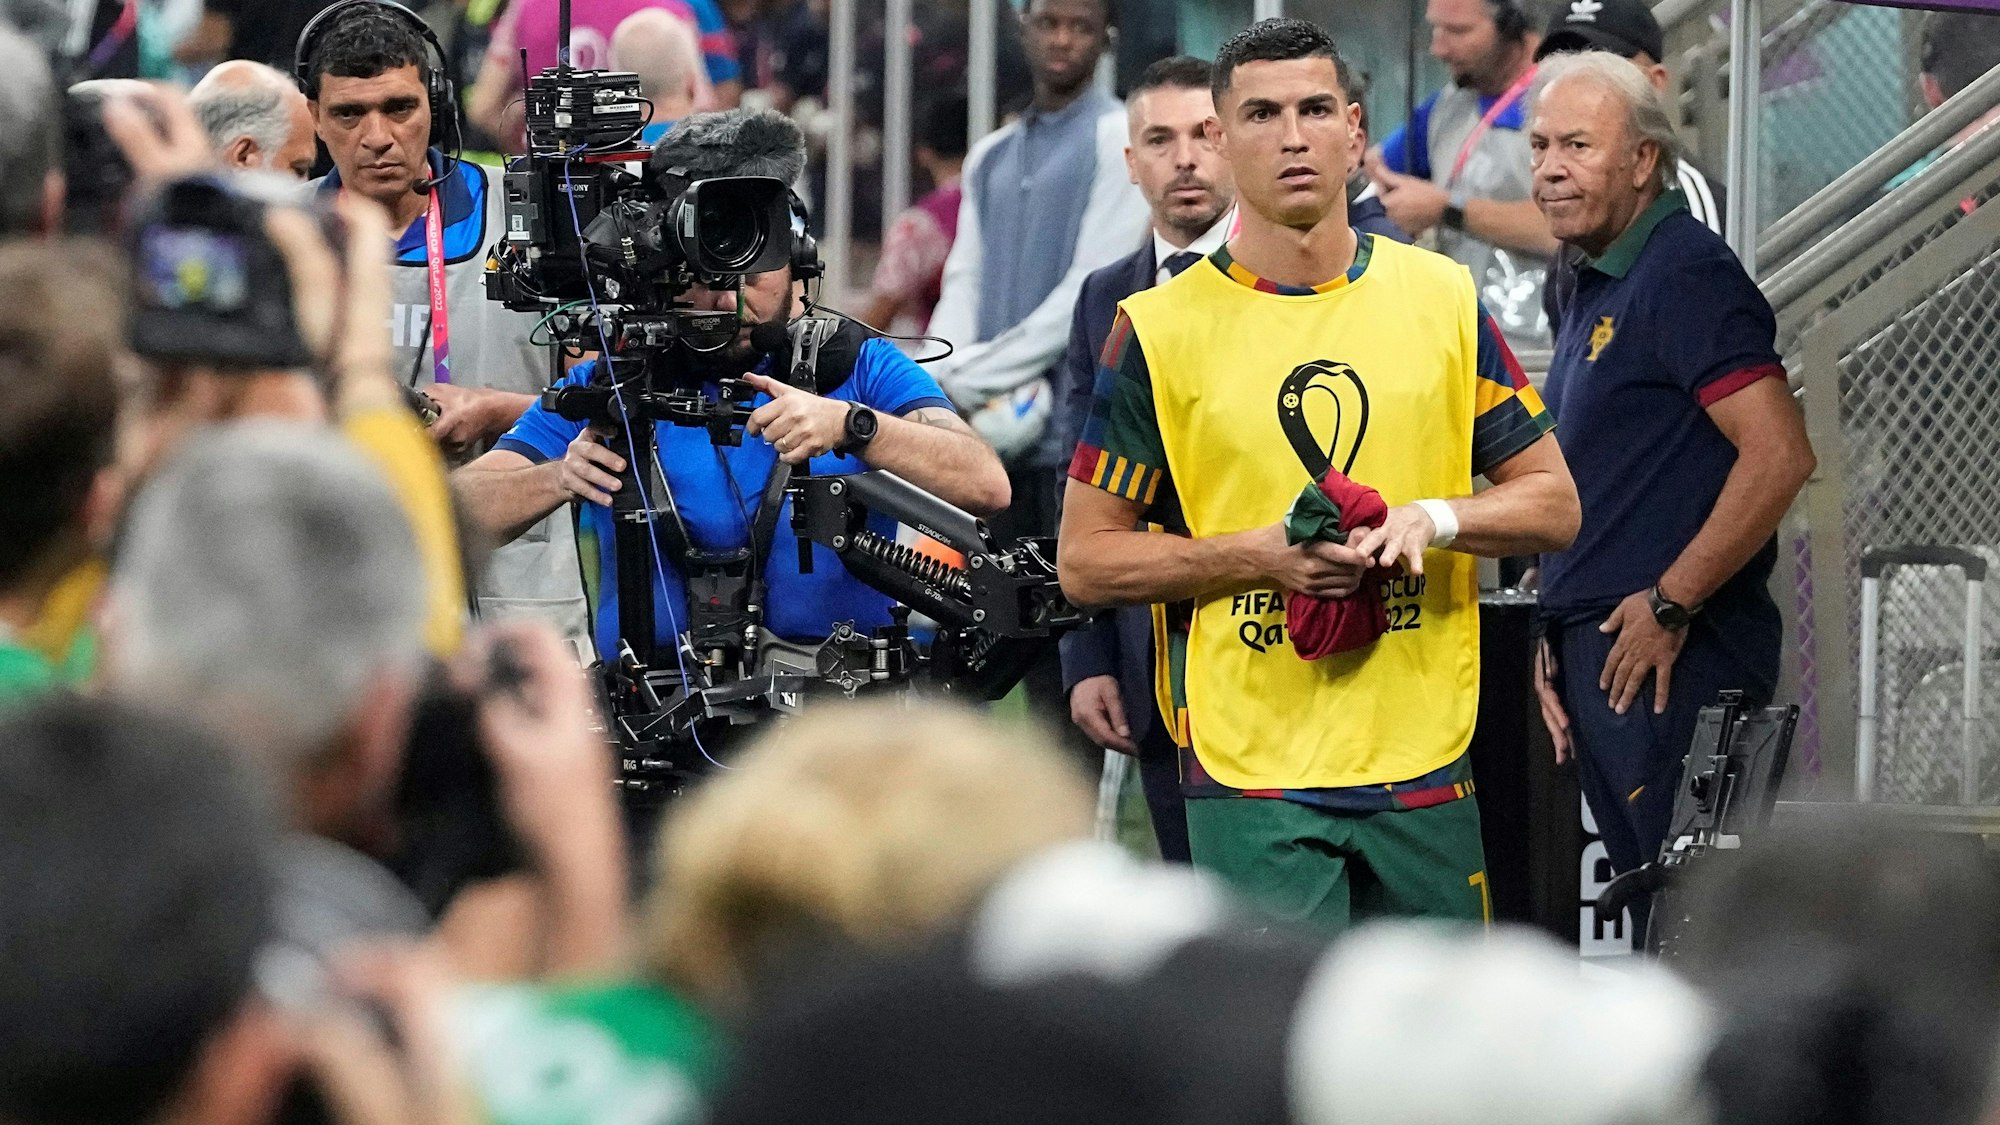 Cristiano Ronaldo marschiert vor dem WM-Achtelfinale zwischen Portugal und der Schweiz Richtung Ersatzbank. Dort erwartet ihn bereits eine Meute von Fotografinnen und Fotografen.